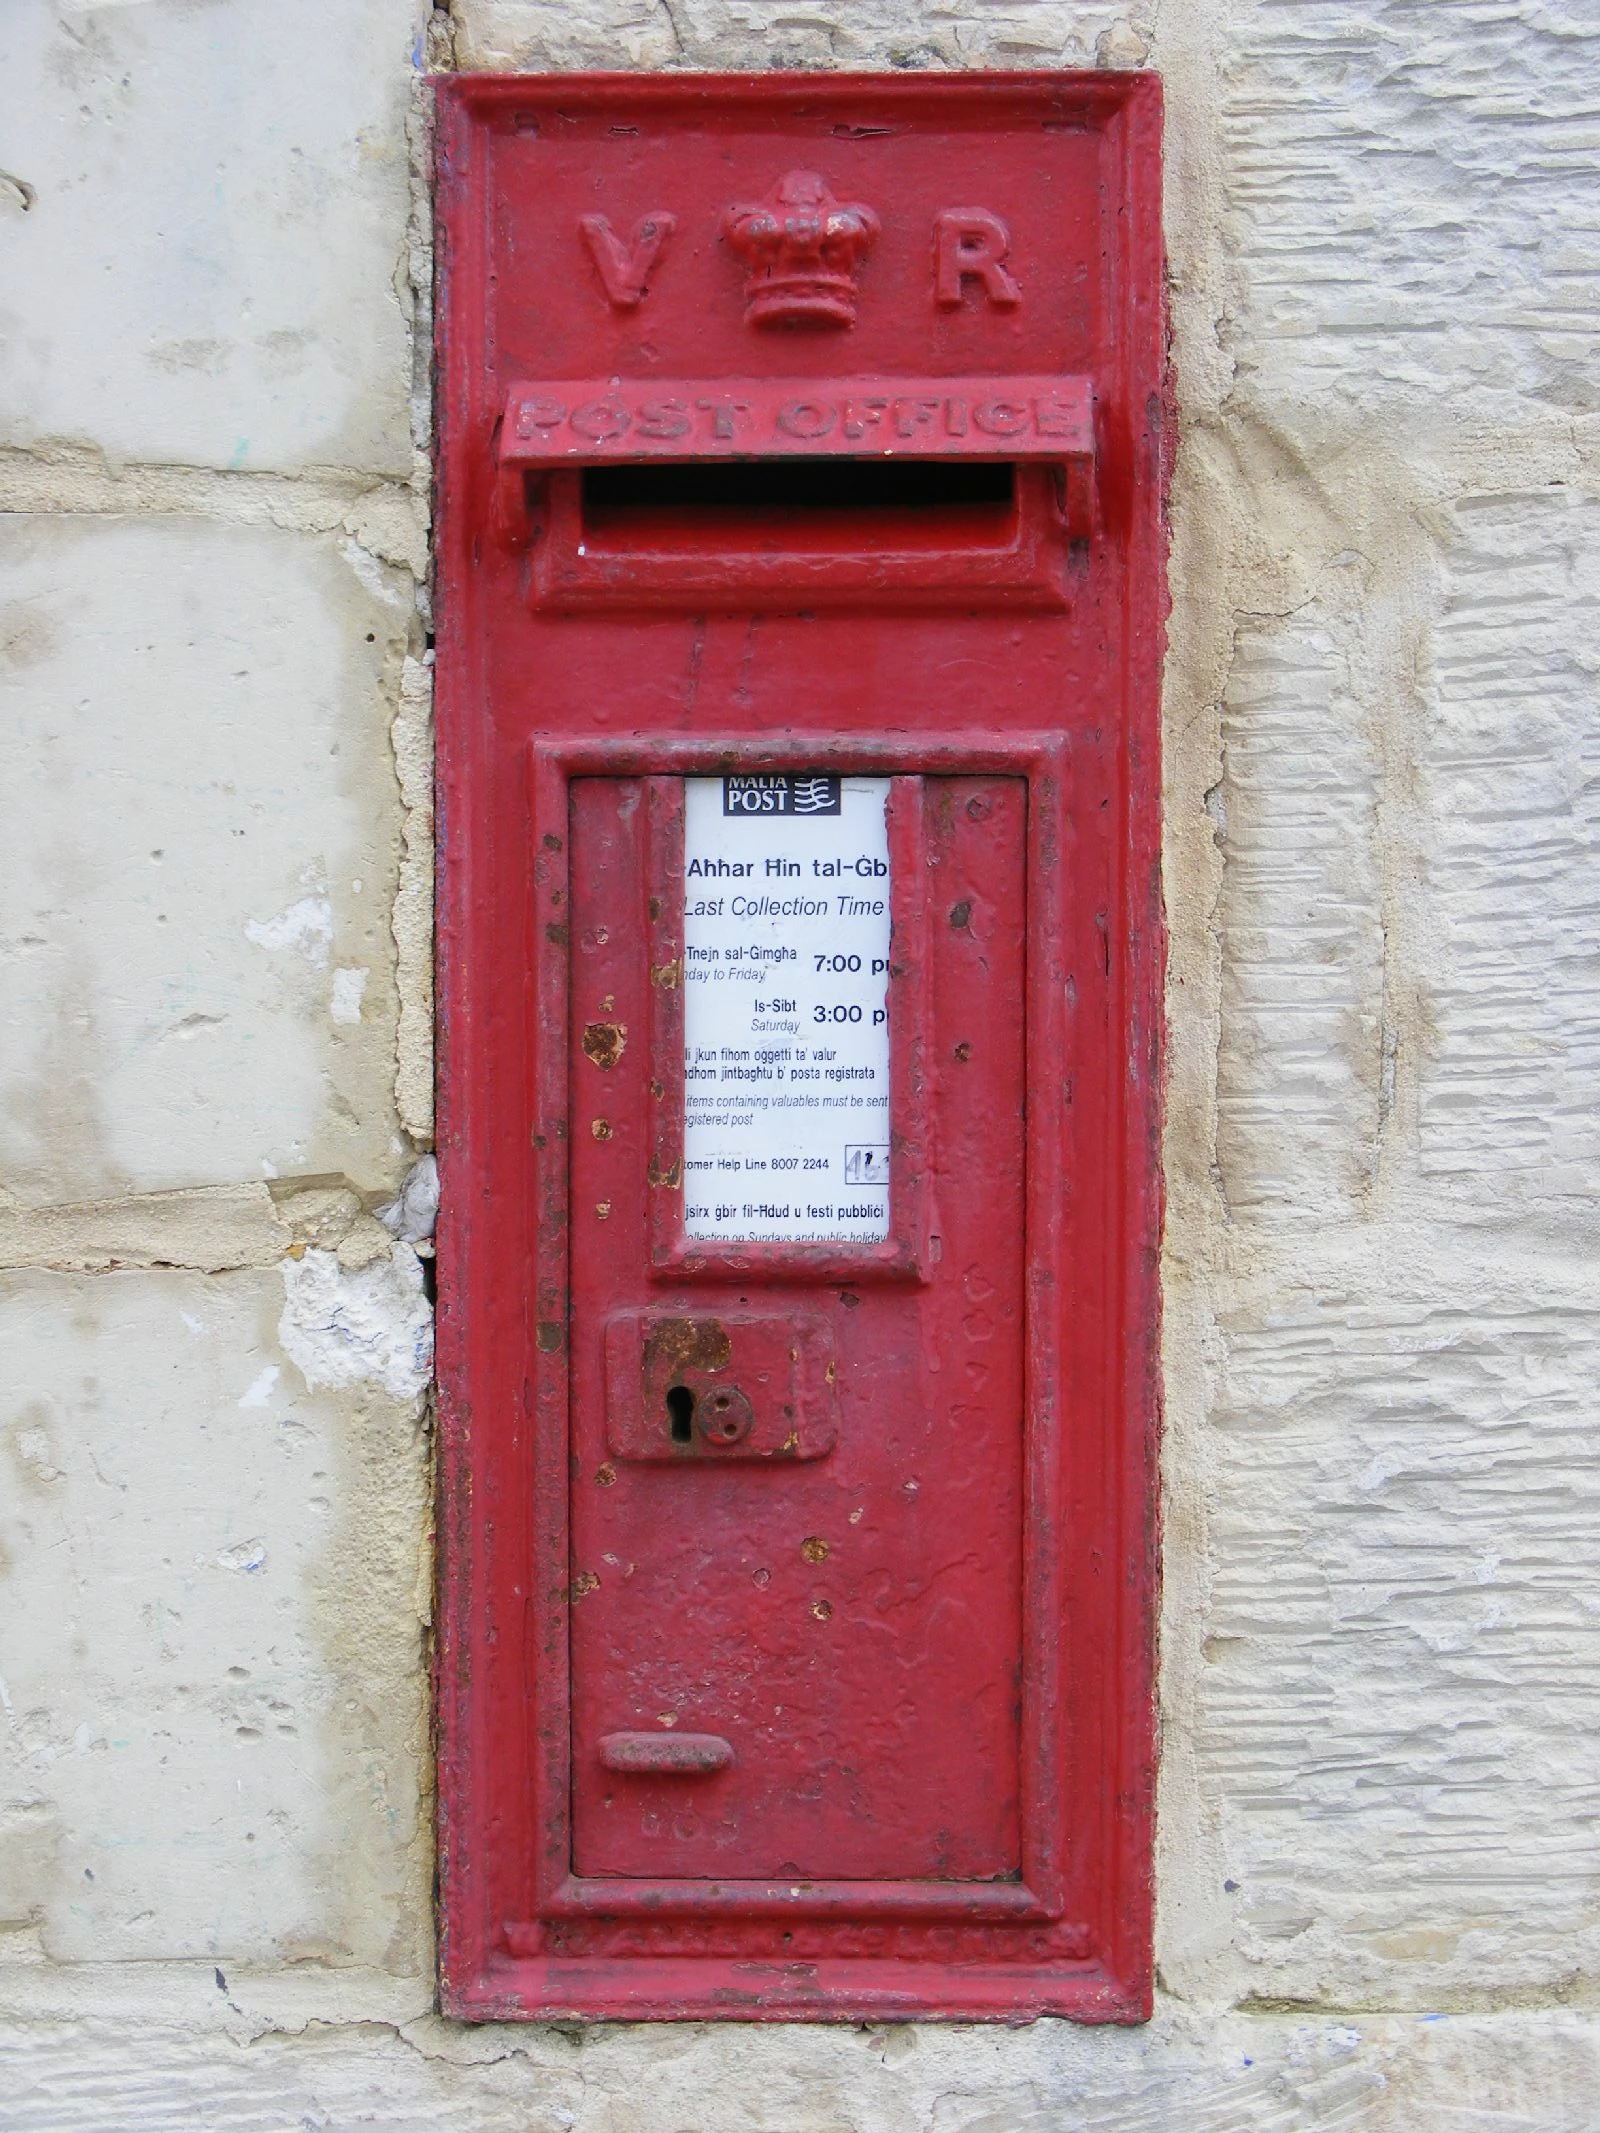 VR Victorian wall post box,Nigret, Malta.